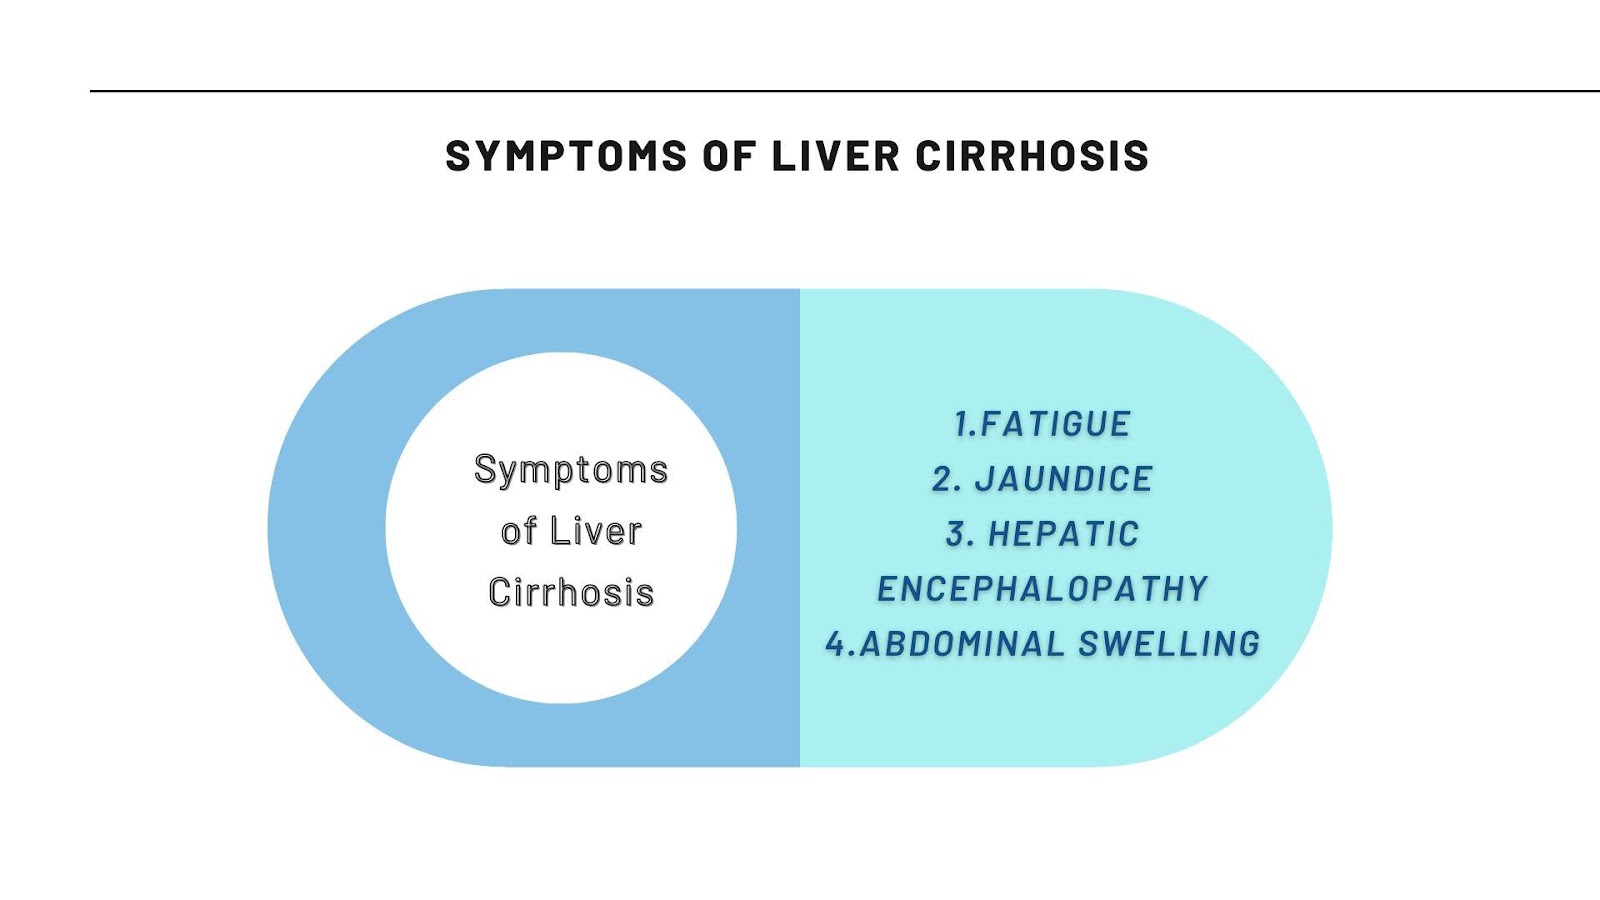 Symptoms of Liver Cirrhosis